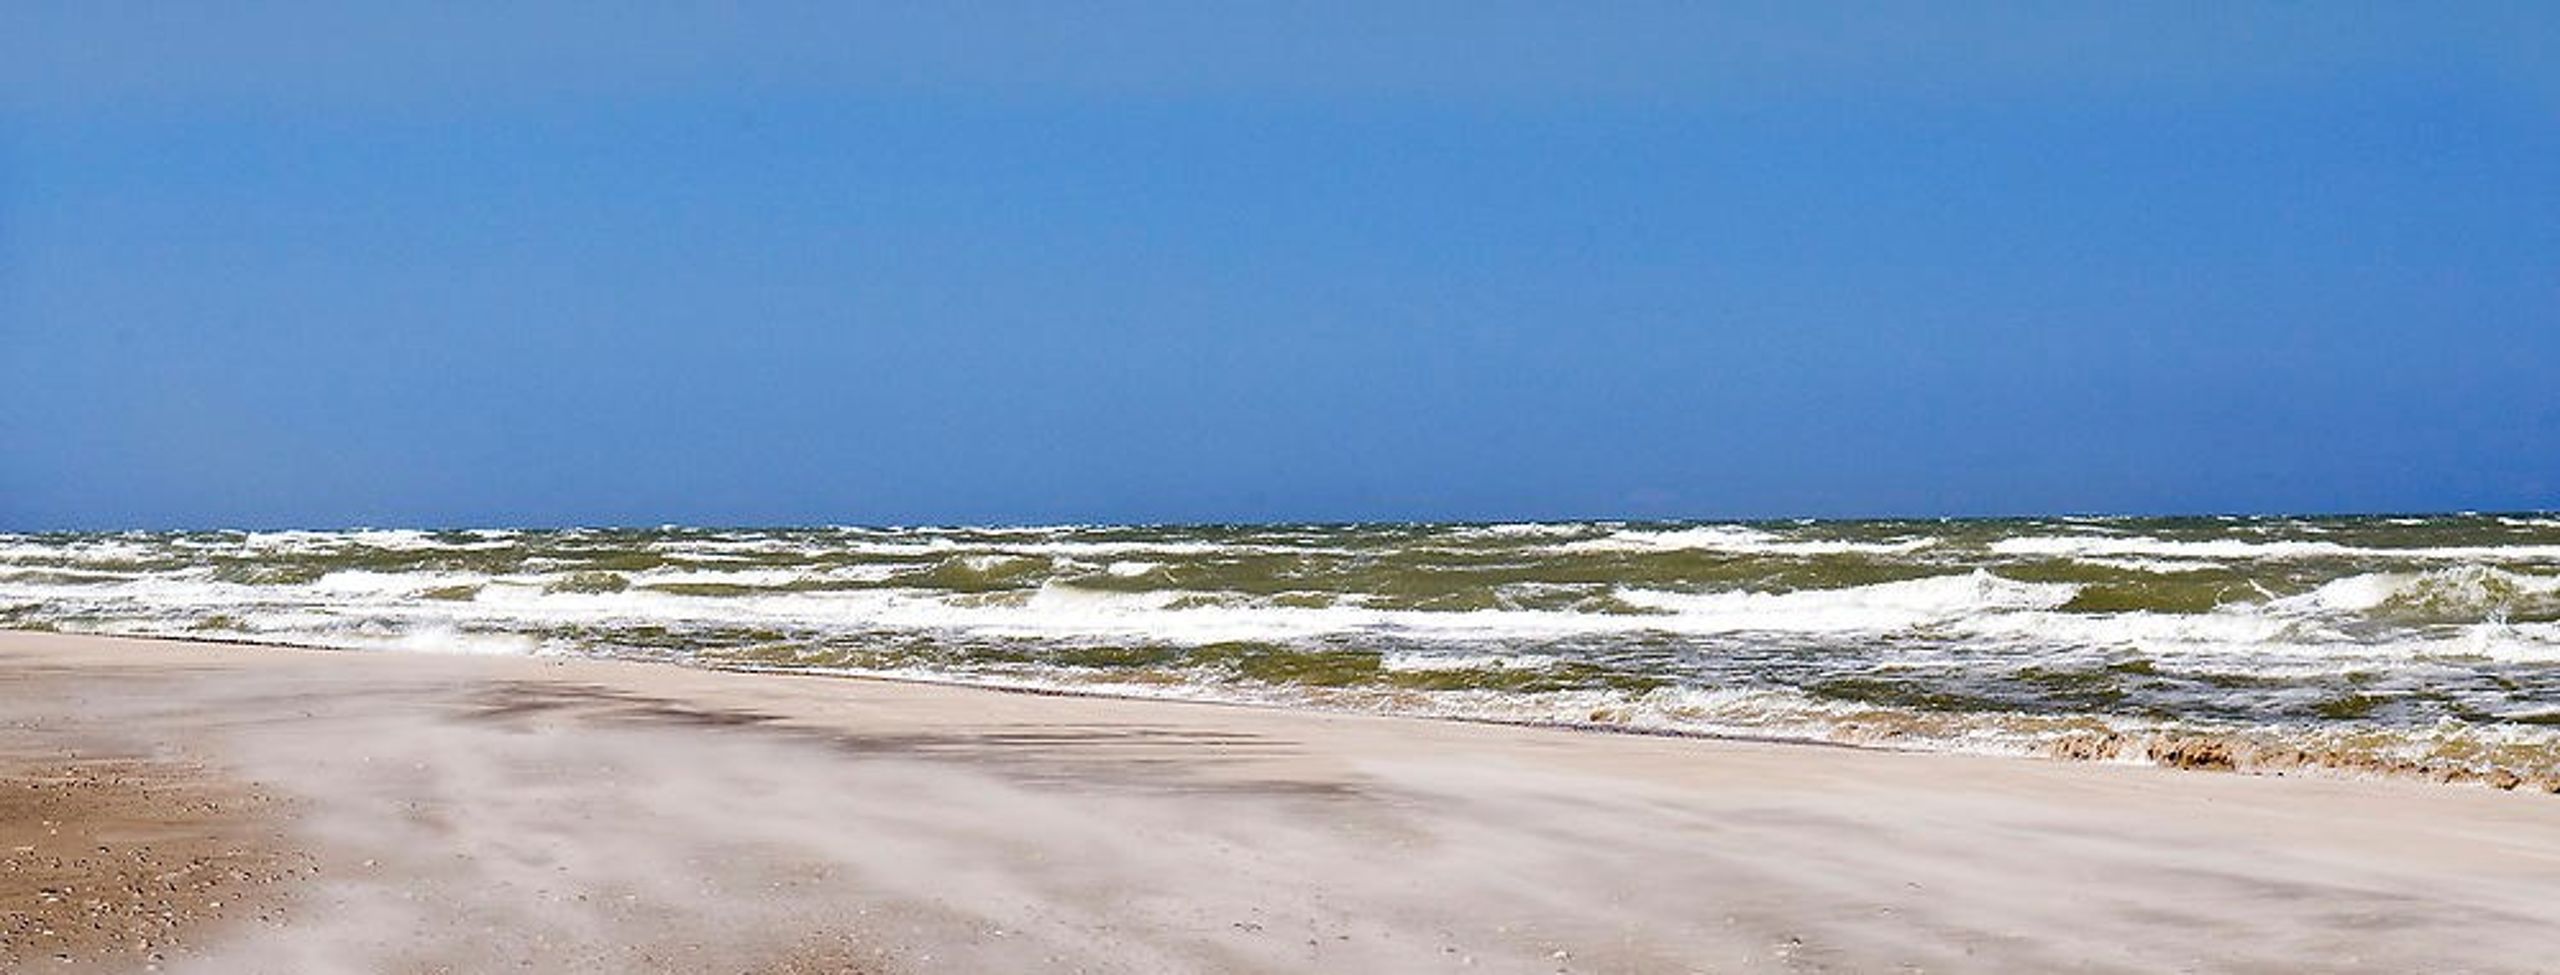 Den jyske vestkyst er en af de mest erosionstruede kyststrækninger i Danmark.